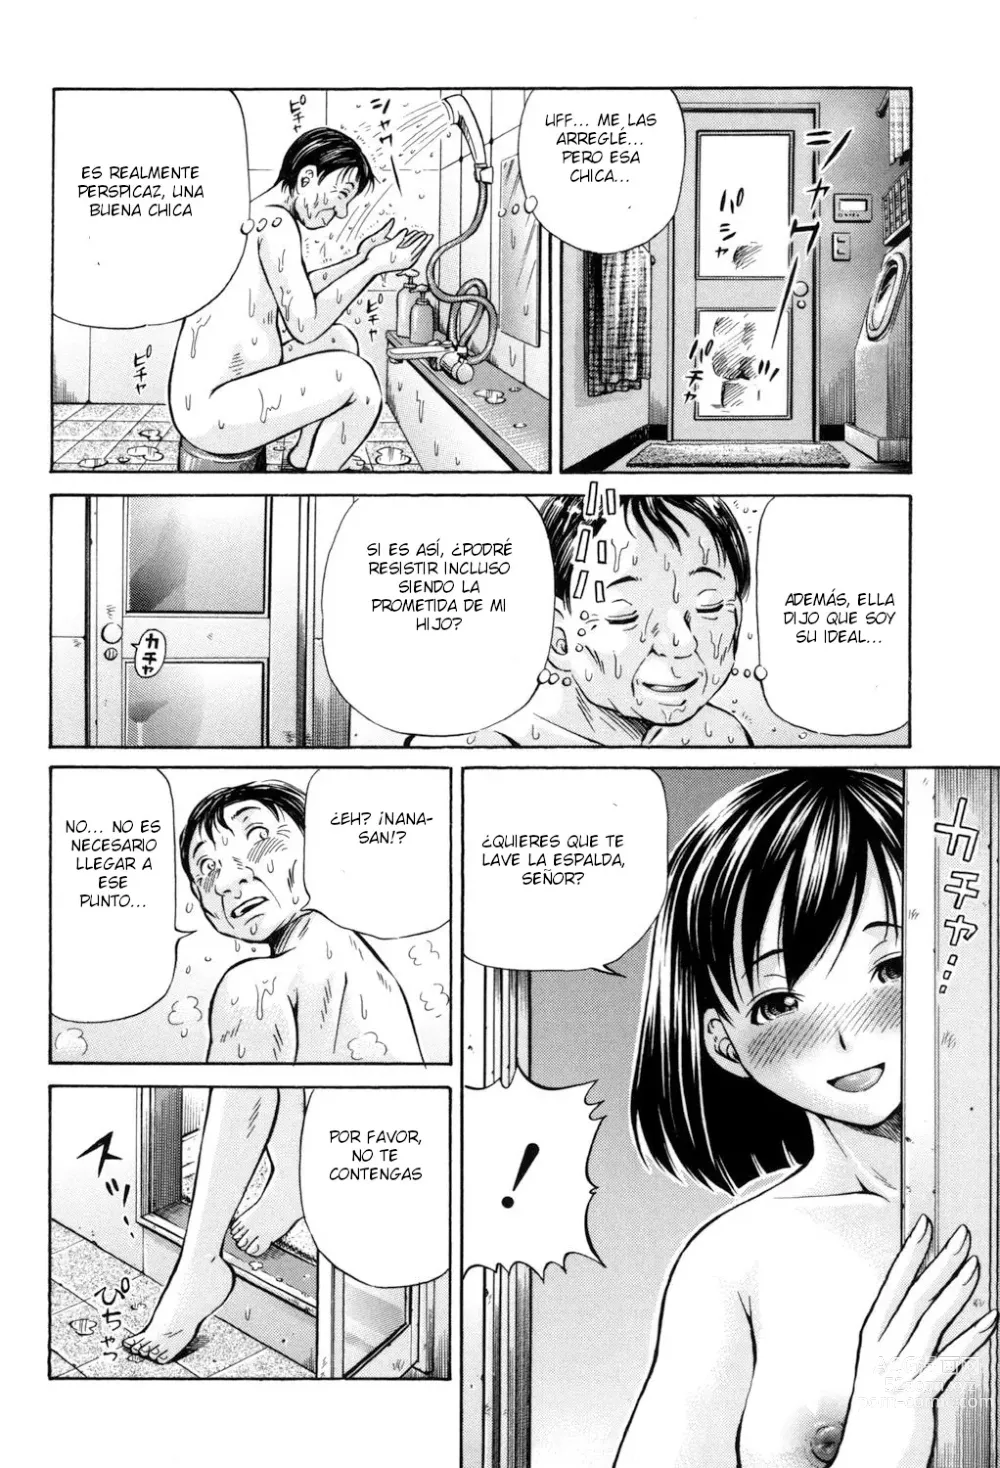 Page 6 of manga Omokage ＝ ones figure